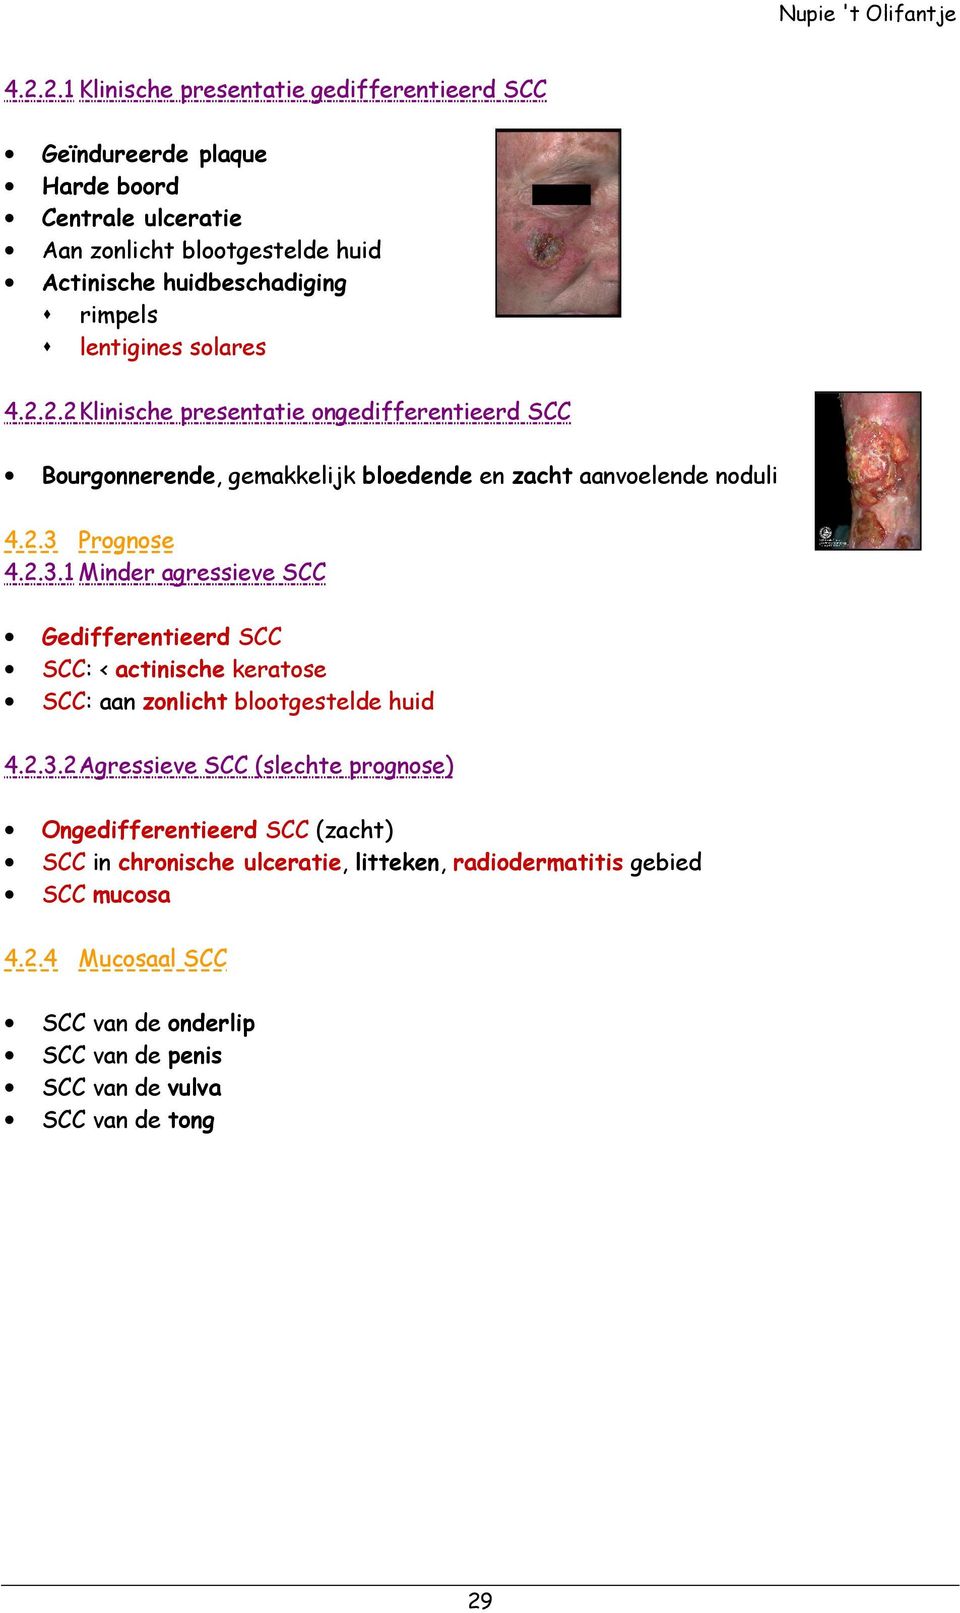 Prognose 4.2.3.1 Minder agressieve SCC Gedifferentieerd SCC SCC: < actinische keratose SCC: aan zonlicht blootgestelde huid 4.2.3.2 Agressieve SCC (slechte prognose) Ongedifferentieerd SCC (zacht) SCC in chronische ulceratie, litteken, radiodermatitis gebied SCC mucosa 4.